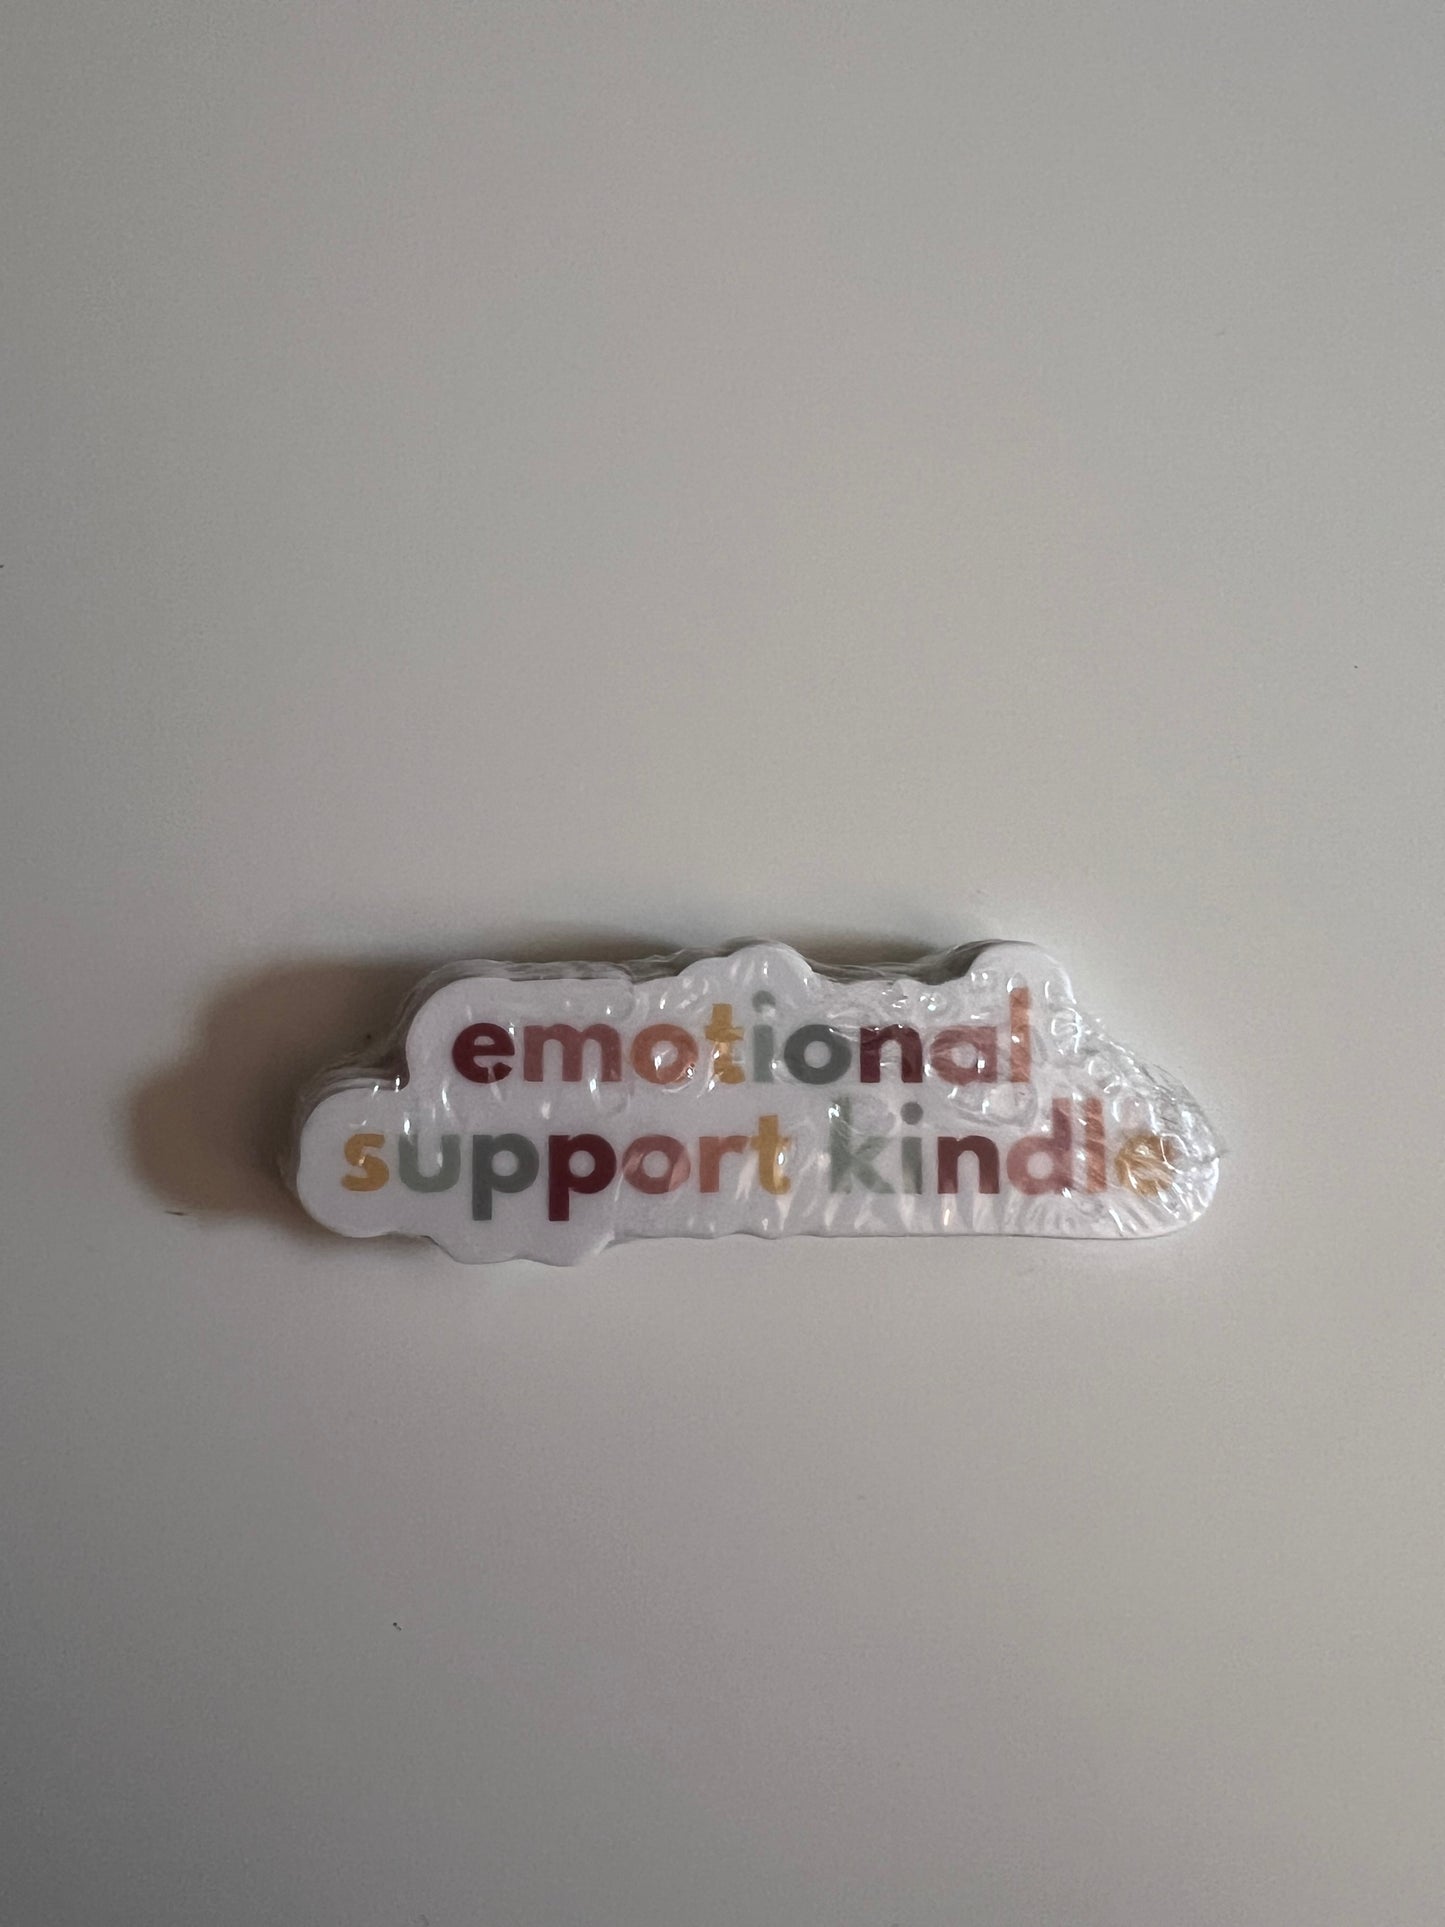 Emotional Support Kindle